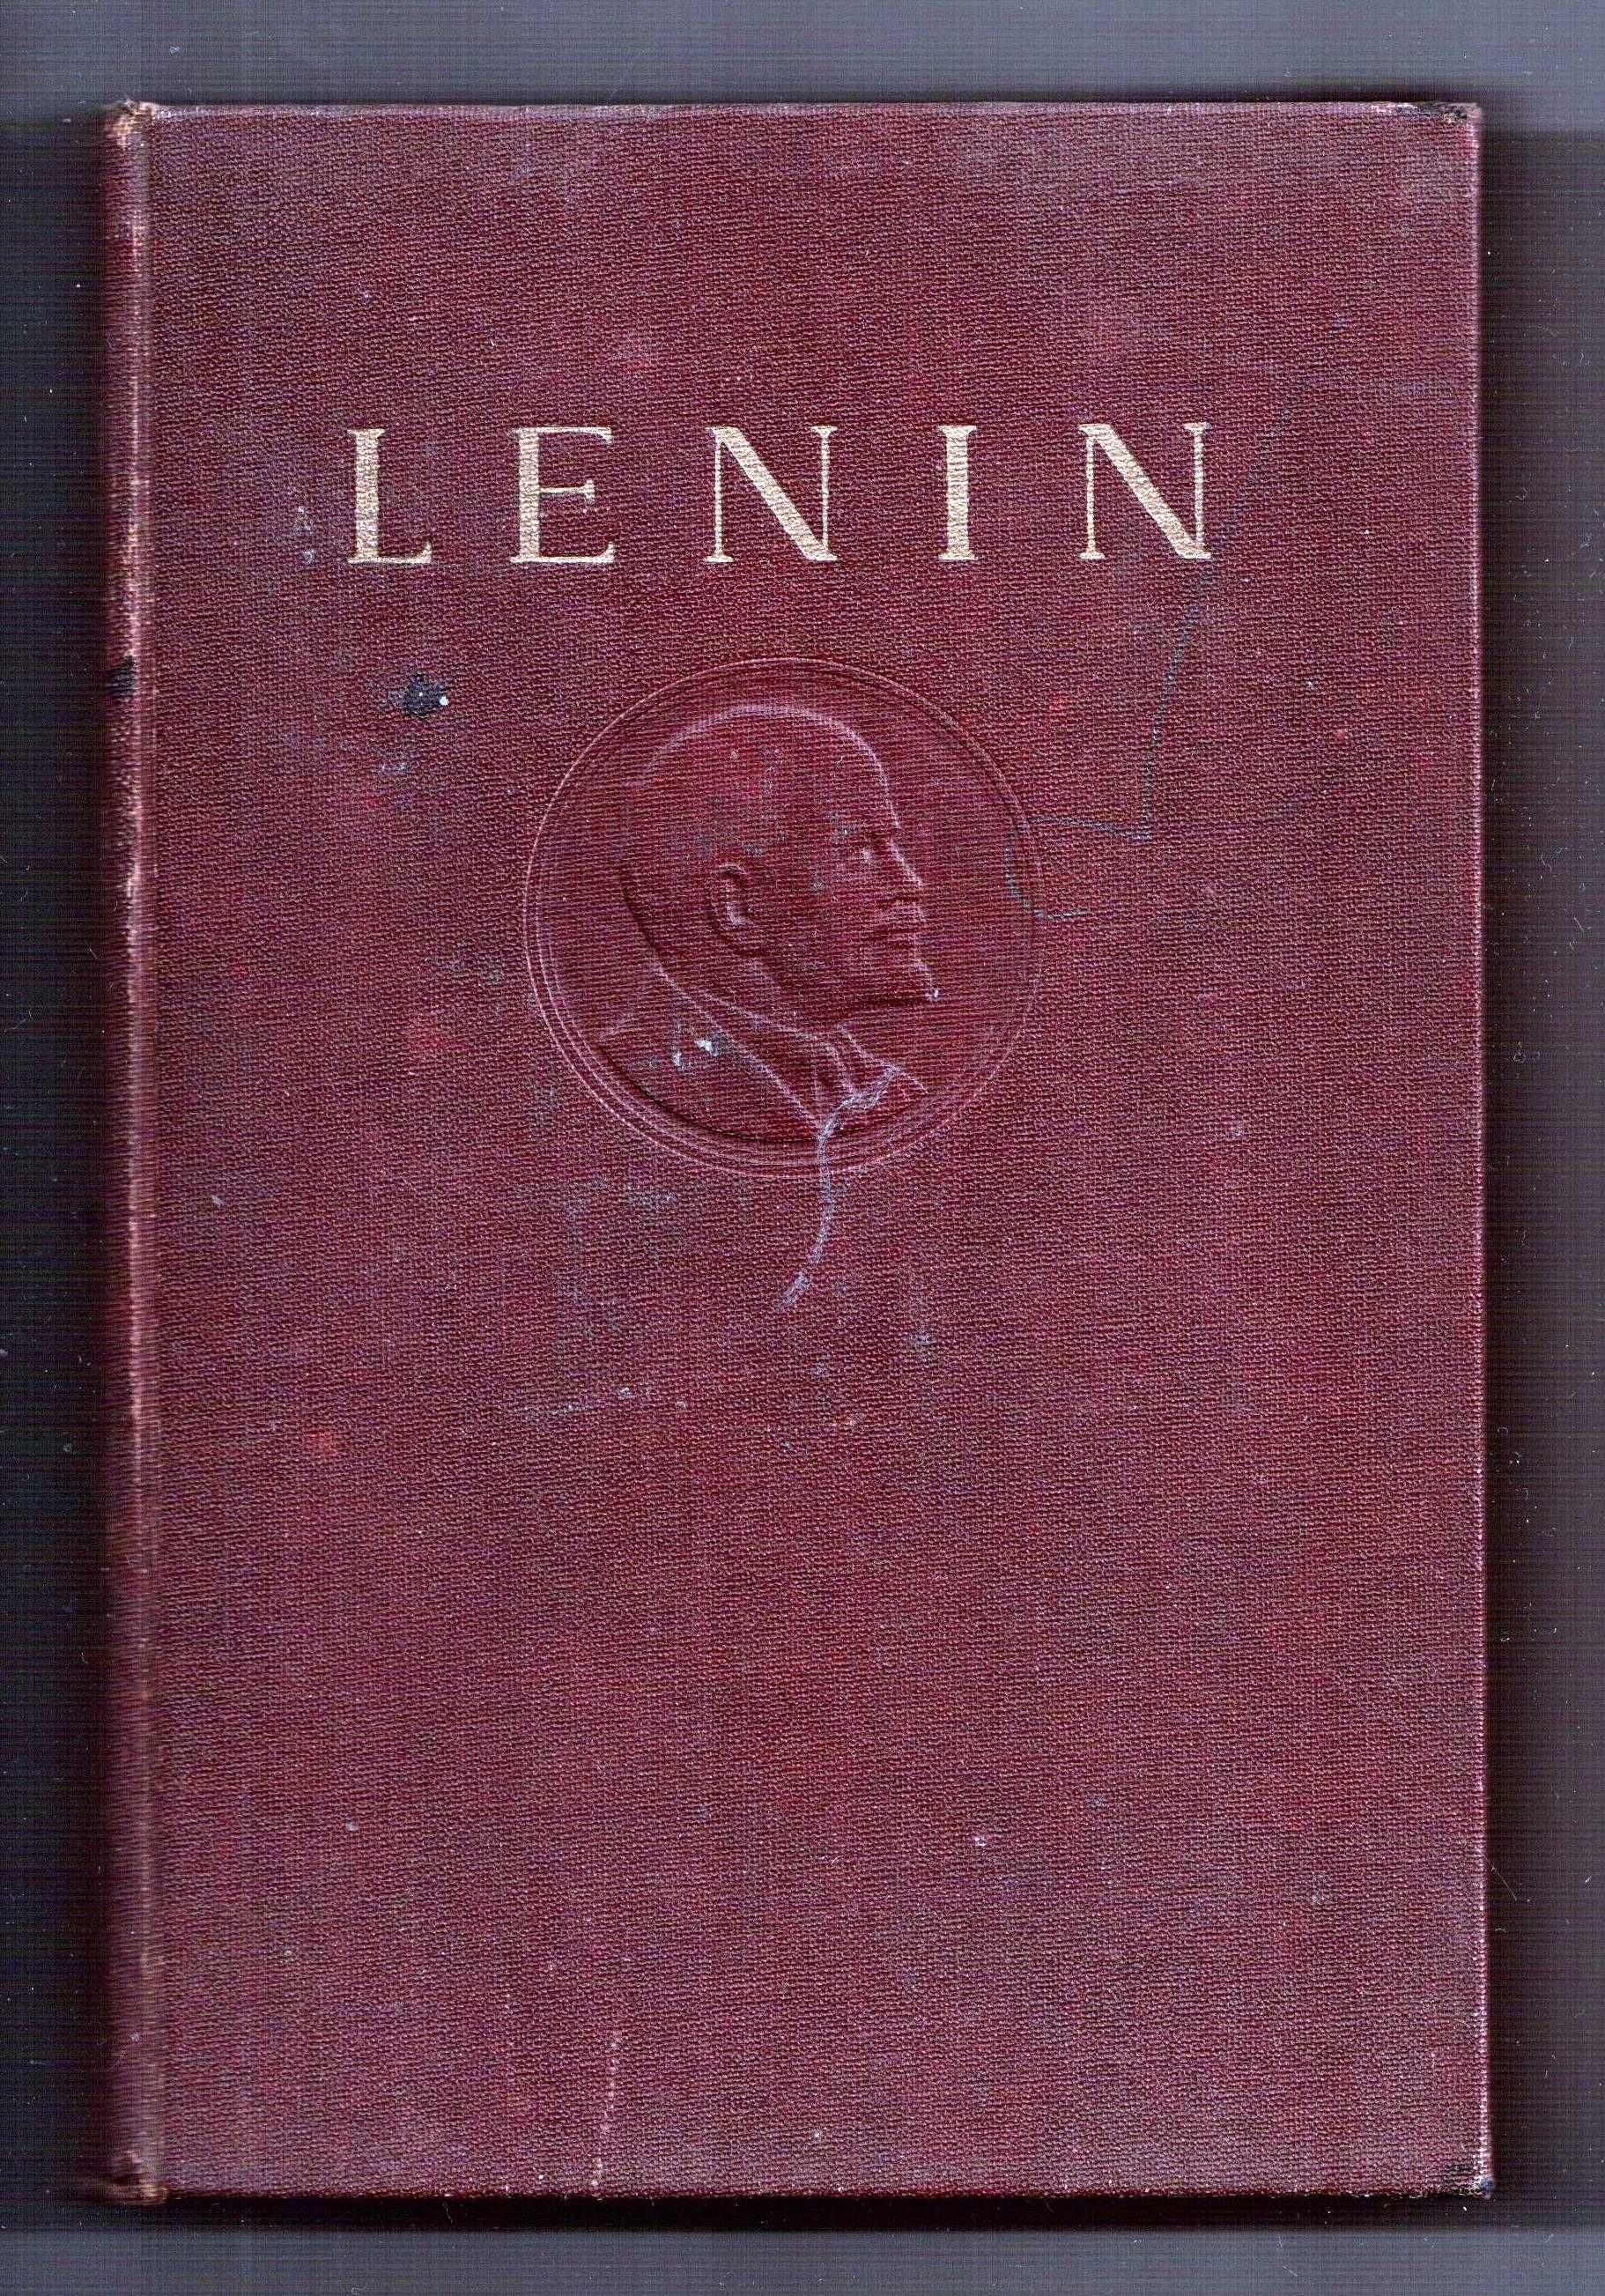 opere de lenin volumul 20 decembrie 1913 - august 1914